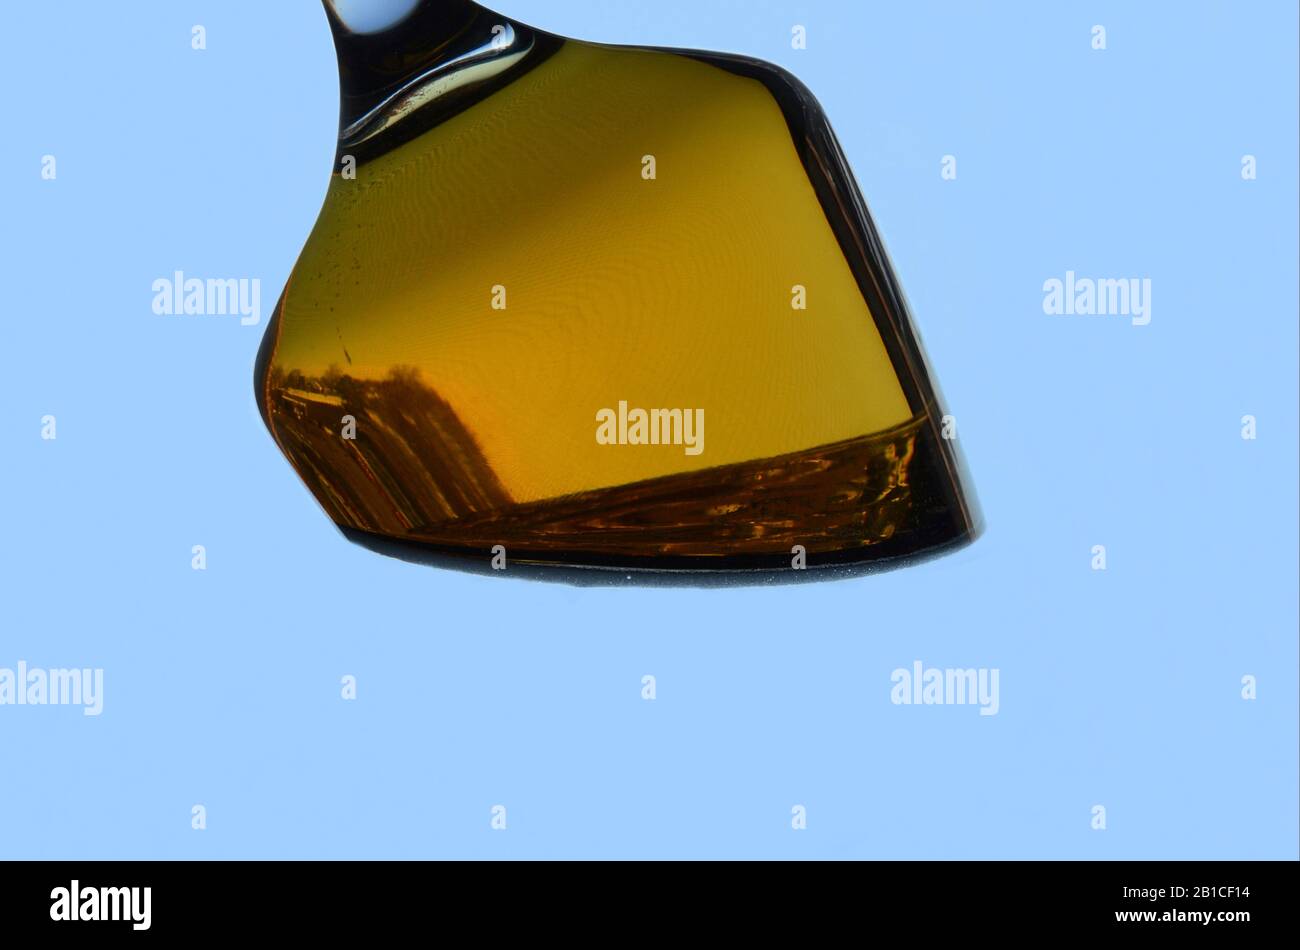 PENDOLO: Un bicchiere di birra subisce una insolita trasformazione gravitazionale contro uno sfondo blu. Foto Stock